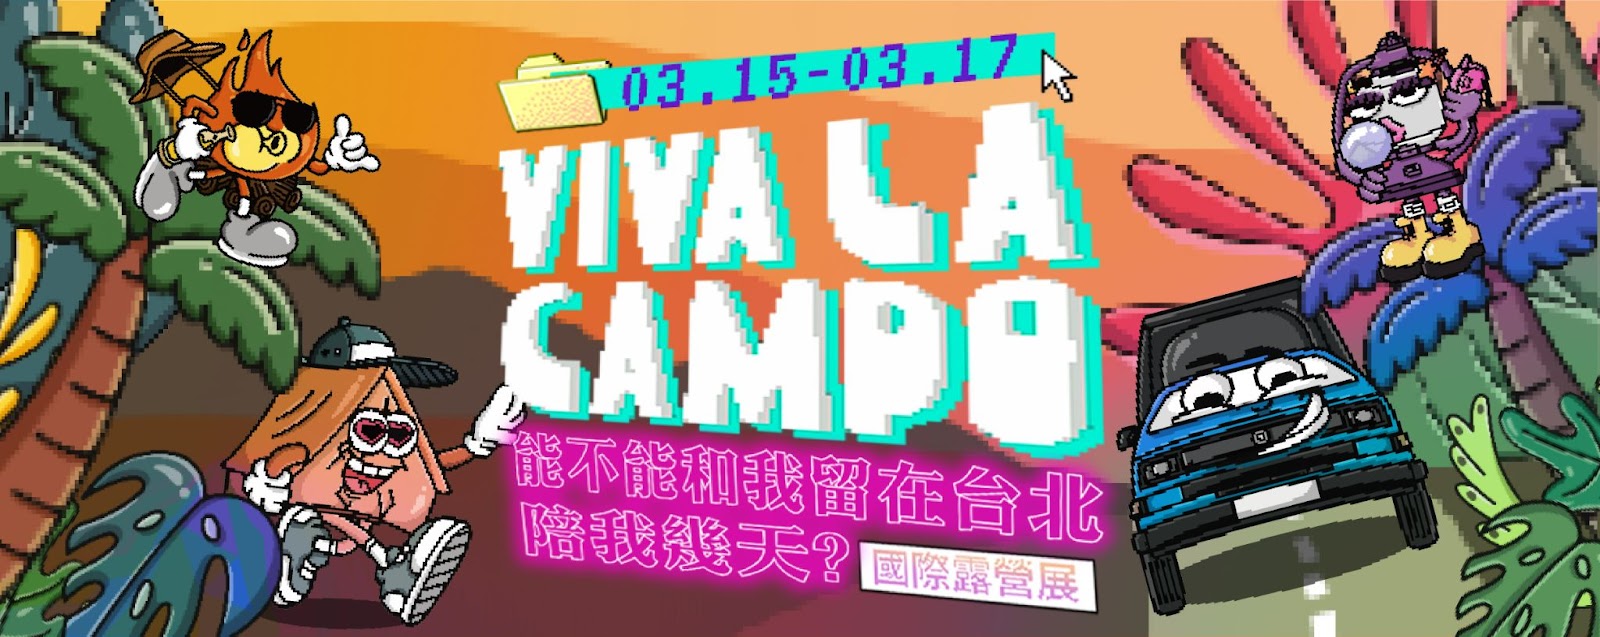 ,台北,華中露營場,國際露營展,Viva La Campo,VIVA LA CAMPO,